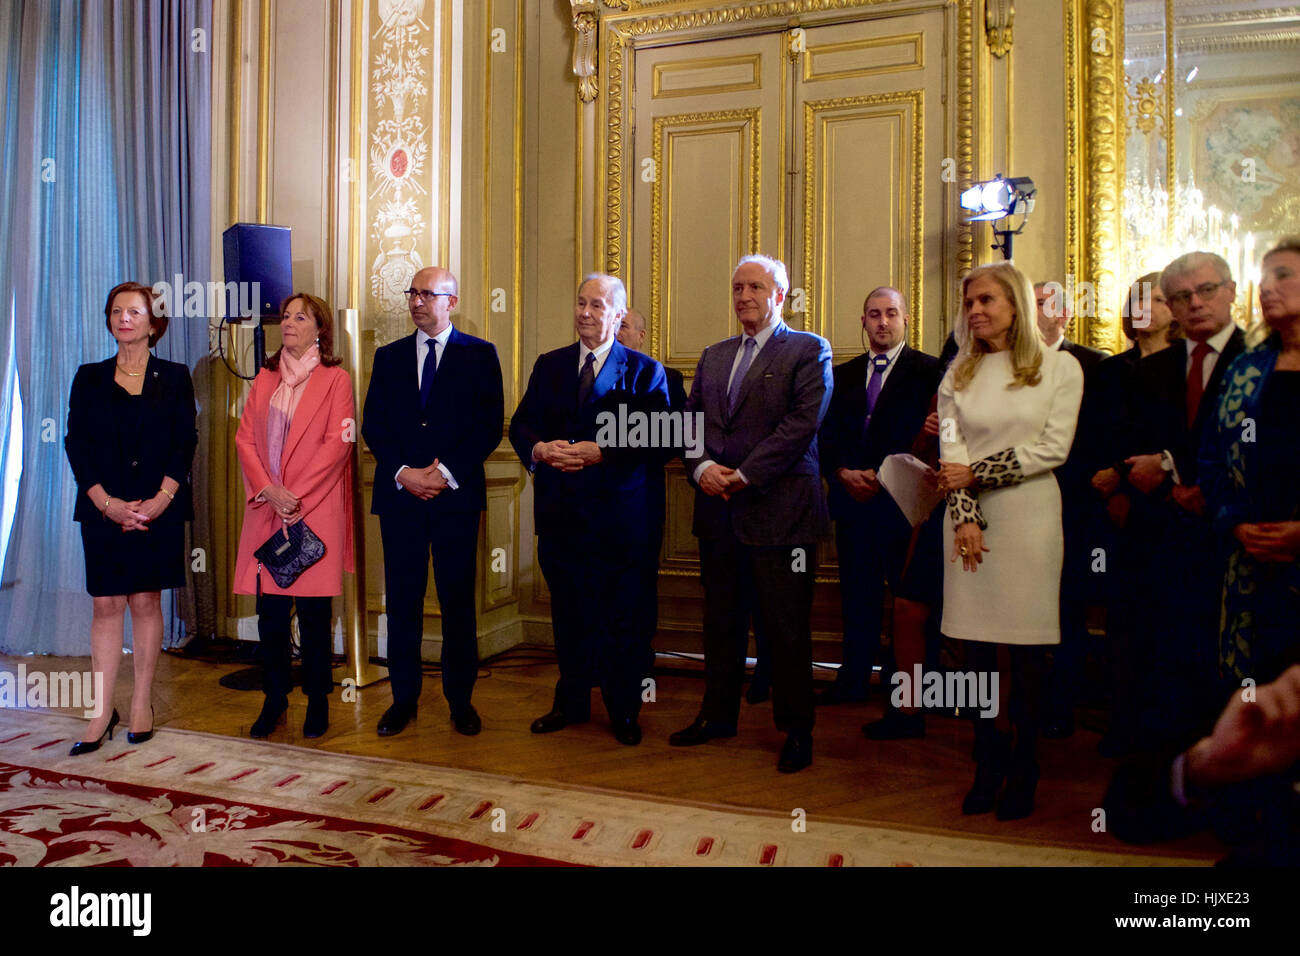 Un gruppo di dignitari, compreso il ministro francese dell'Ecologia Ségolène Royal, Principe Shah Karim Al Hussaini, l'Aga Khan IV, E DEGLI STATI UNITI Ambasciatore di Francia Jane Hartley, ascoltare come il Ministro degli esteri francese Jean-Marc Ayrault si prepara a award U.S. Il segretario di Stato John Kerry il Gran Ufficiale della Legion d'onore, il secondo livello più elevato del premio francese, nel corso di una cerimonia che si terrà a dicembre 10, 2016 al Quai d'Orsay - il ministero degli Esteri francese - a Parigi, Francia. Foto Stock